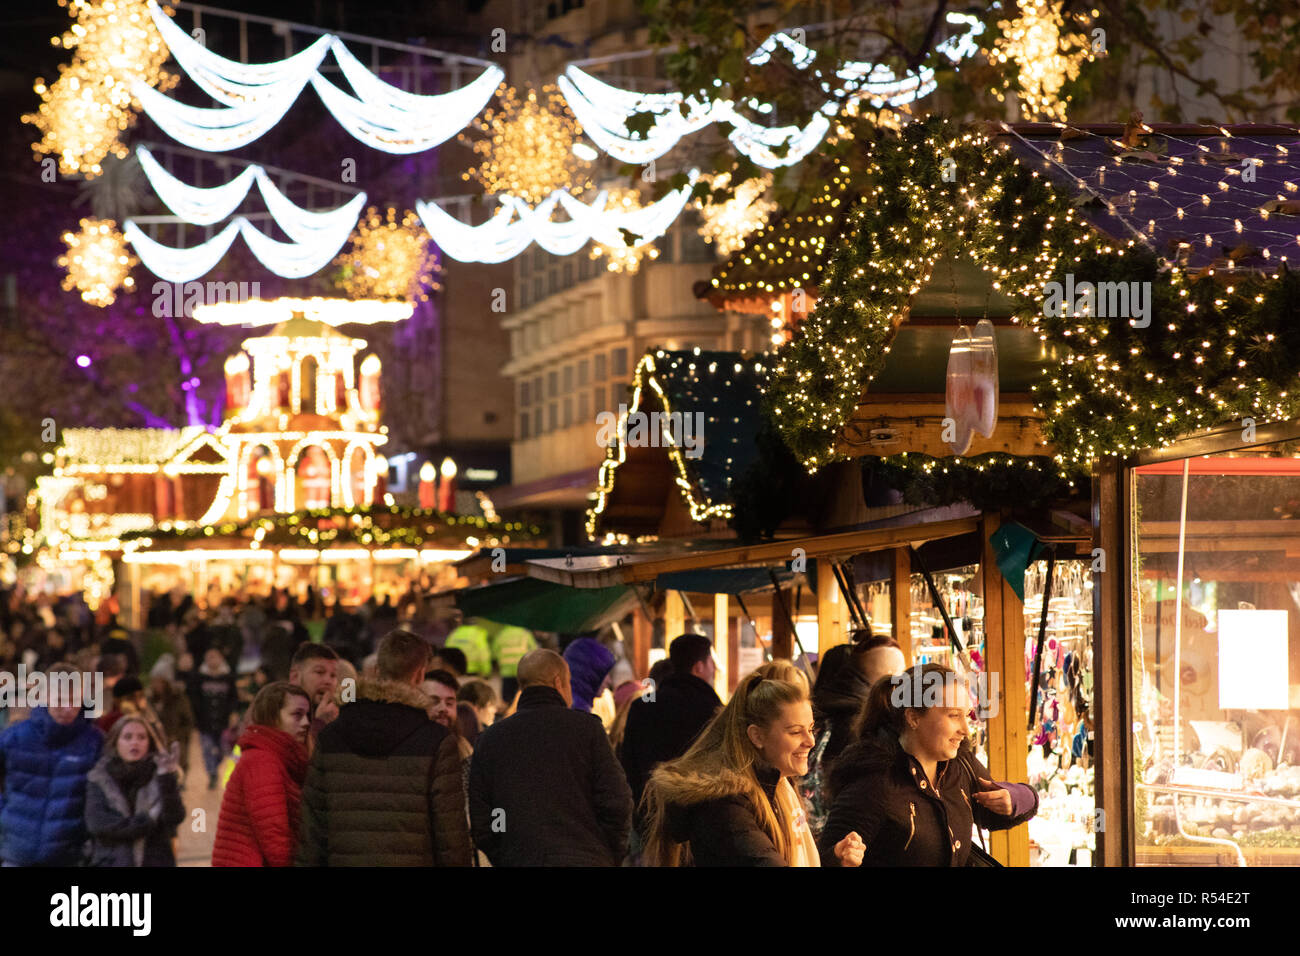 Les lumières de Noël entourant le marché allemand sur les nouvelles Street dans le centre-ville de Birmingham, England, UK. Banque D'Images